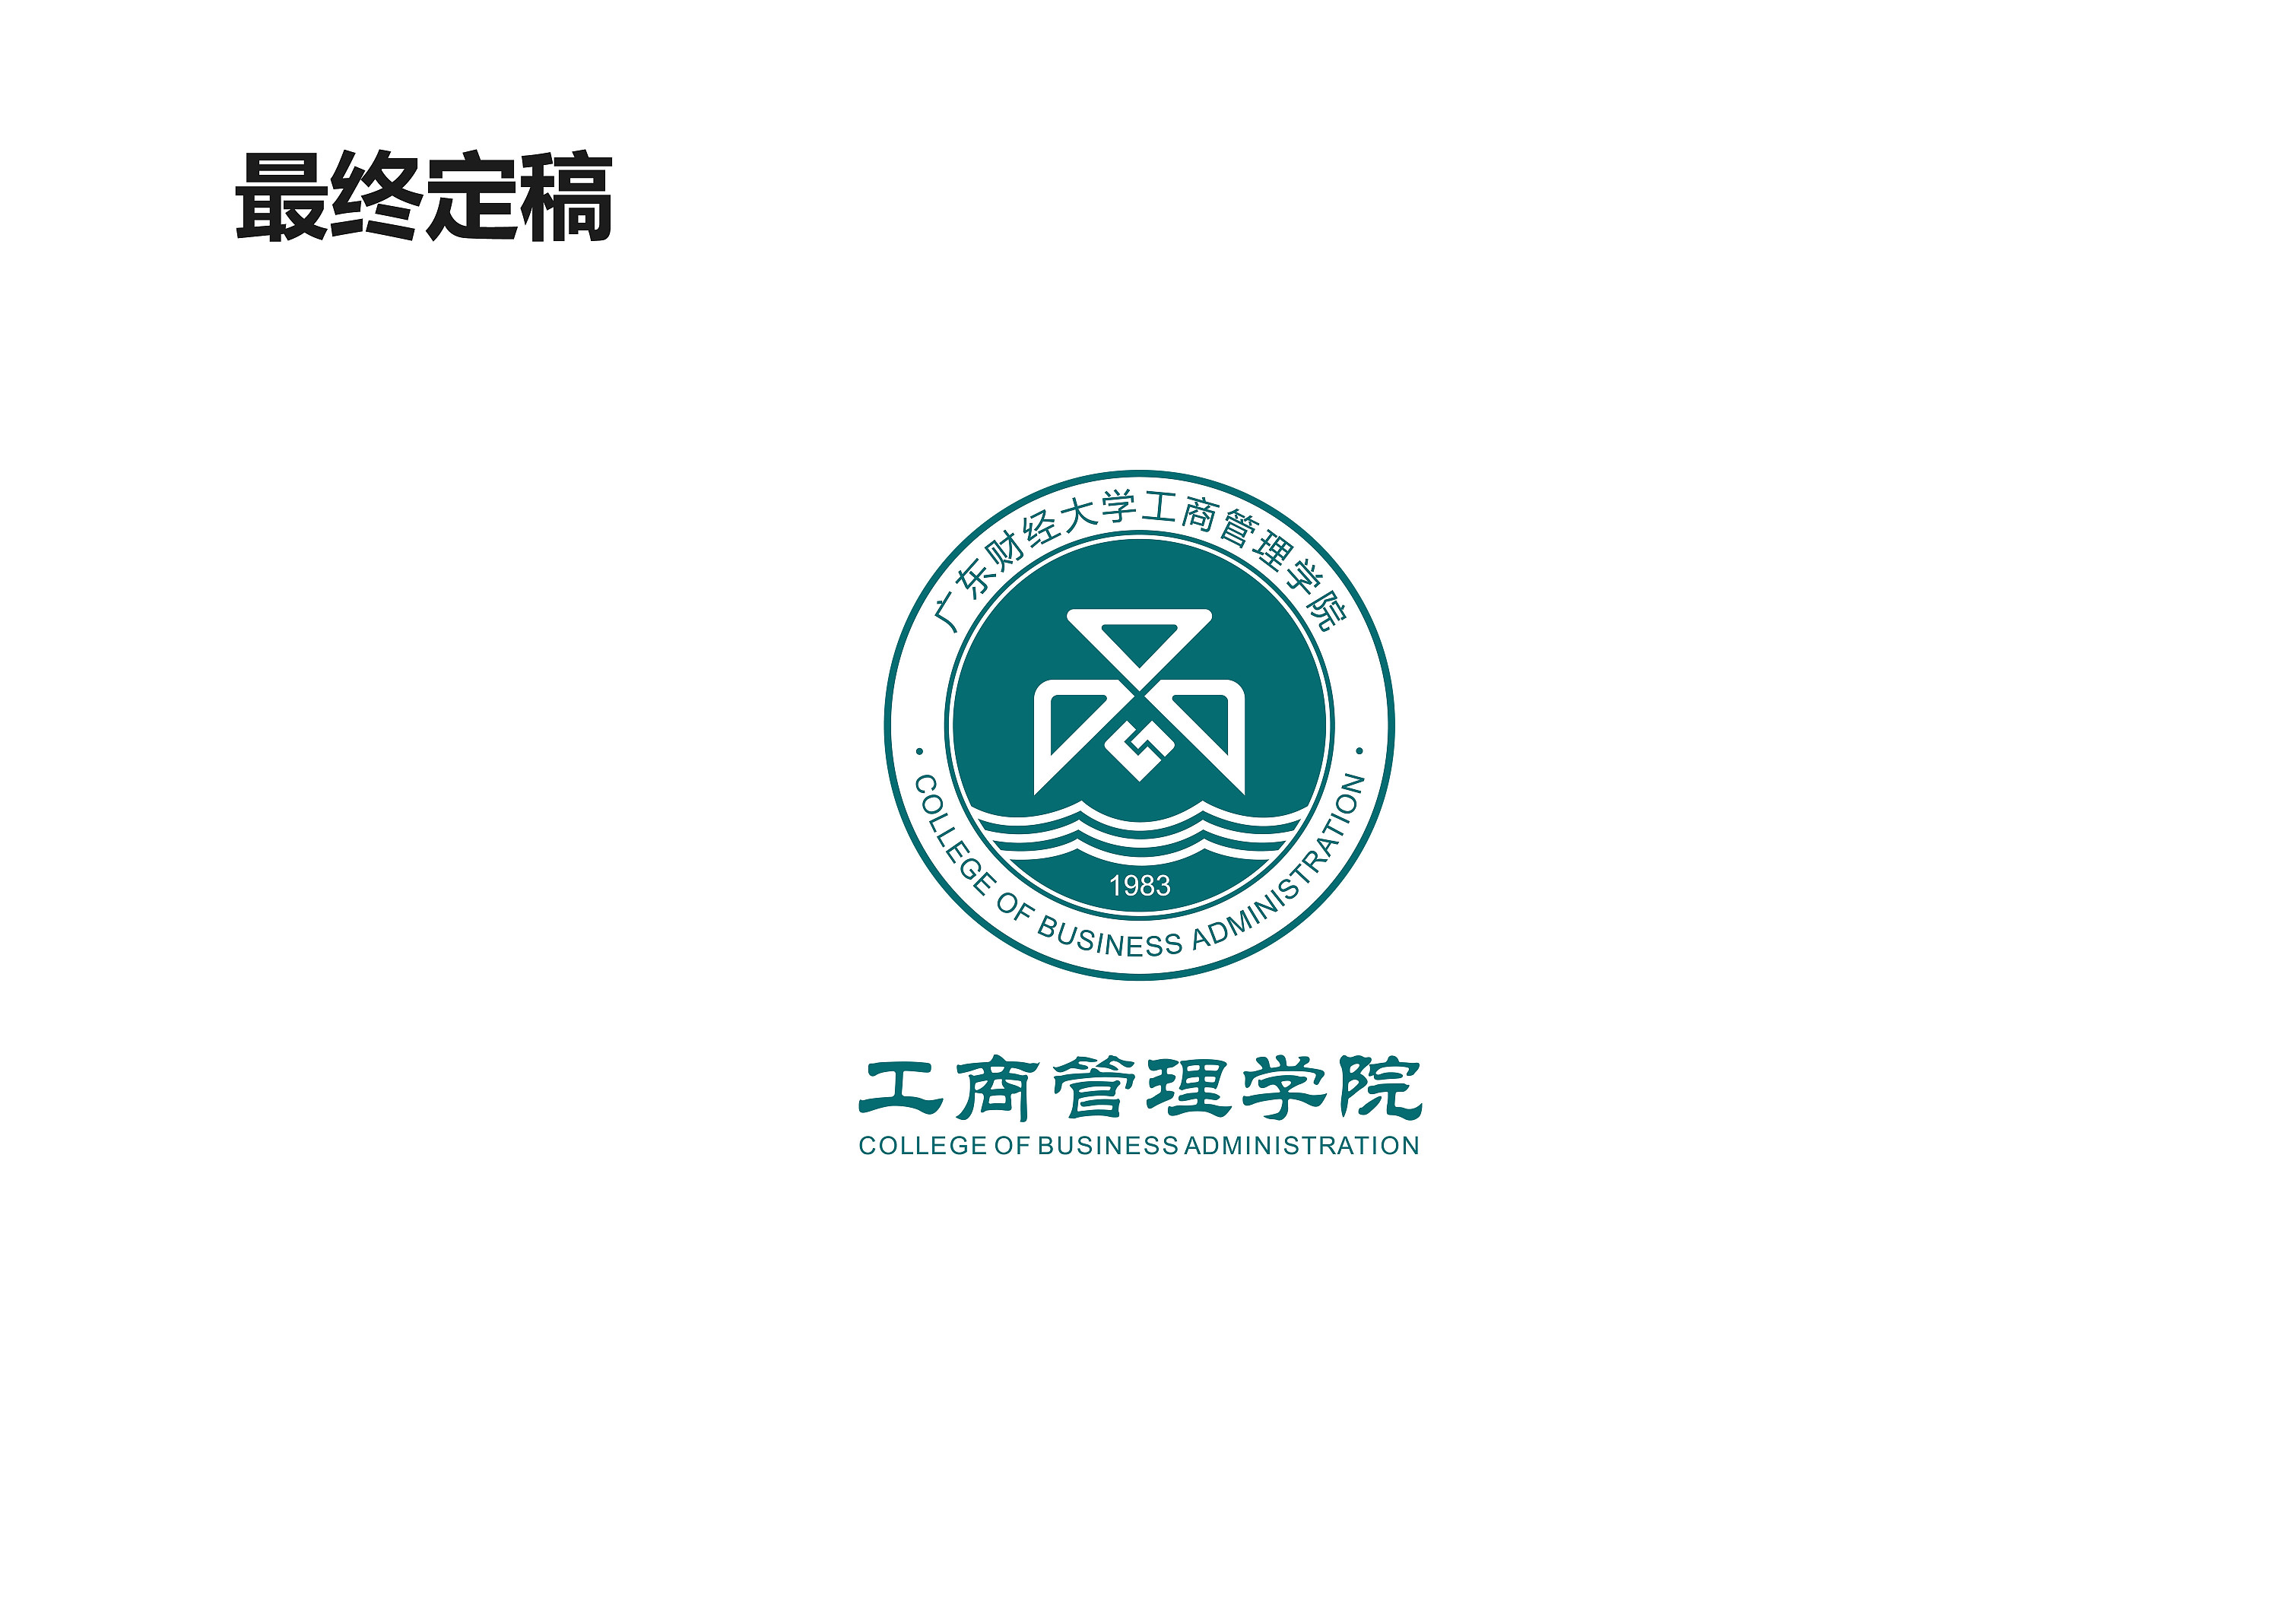 学校工商管理学院的院徽设计